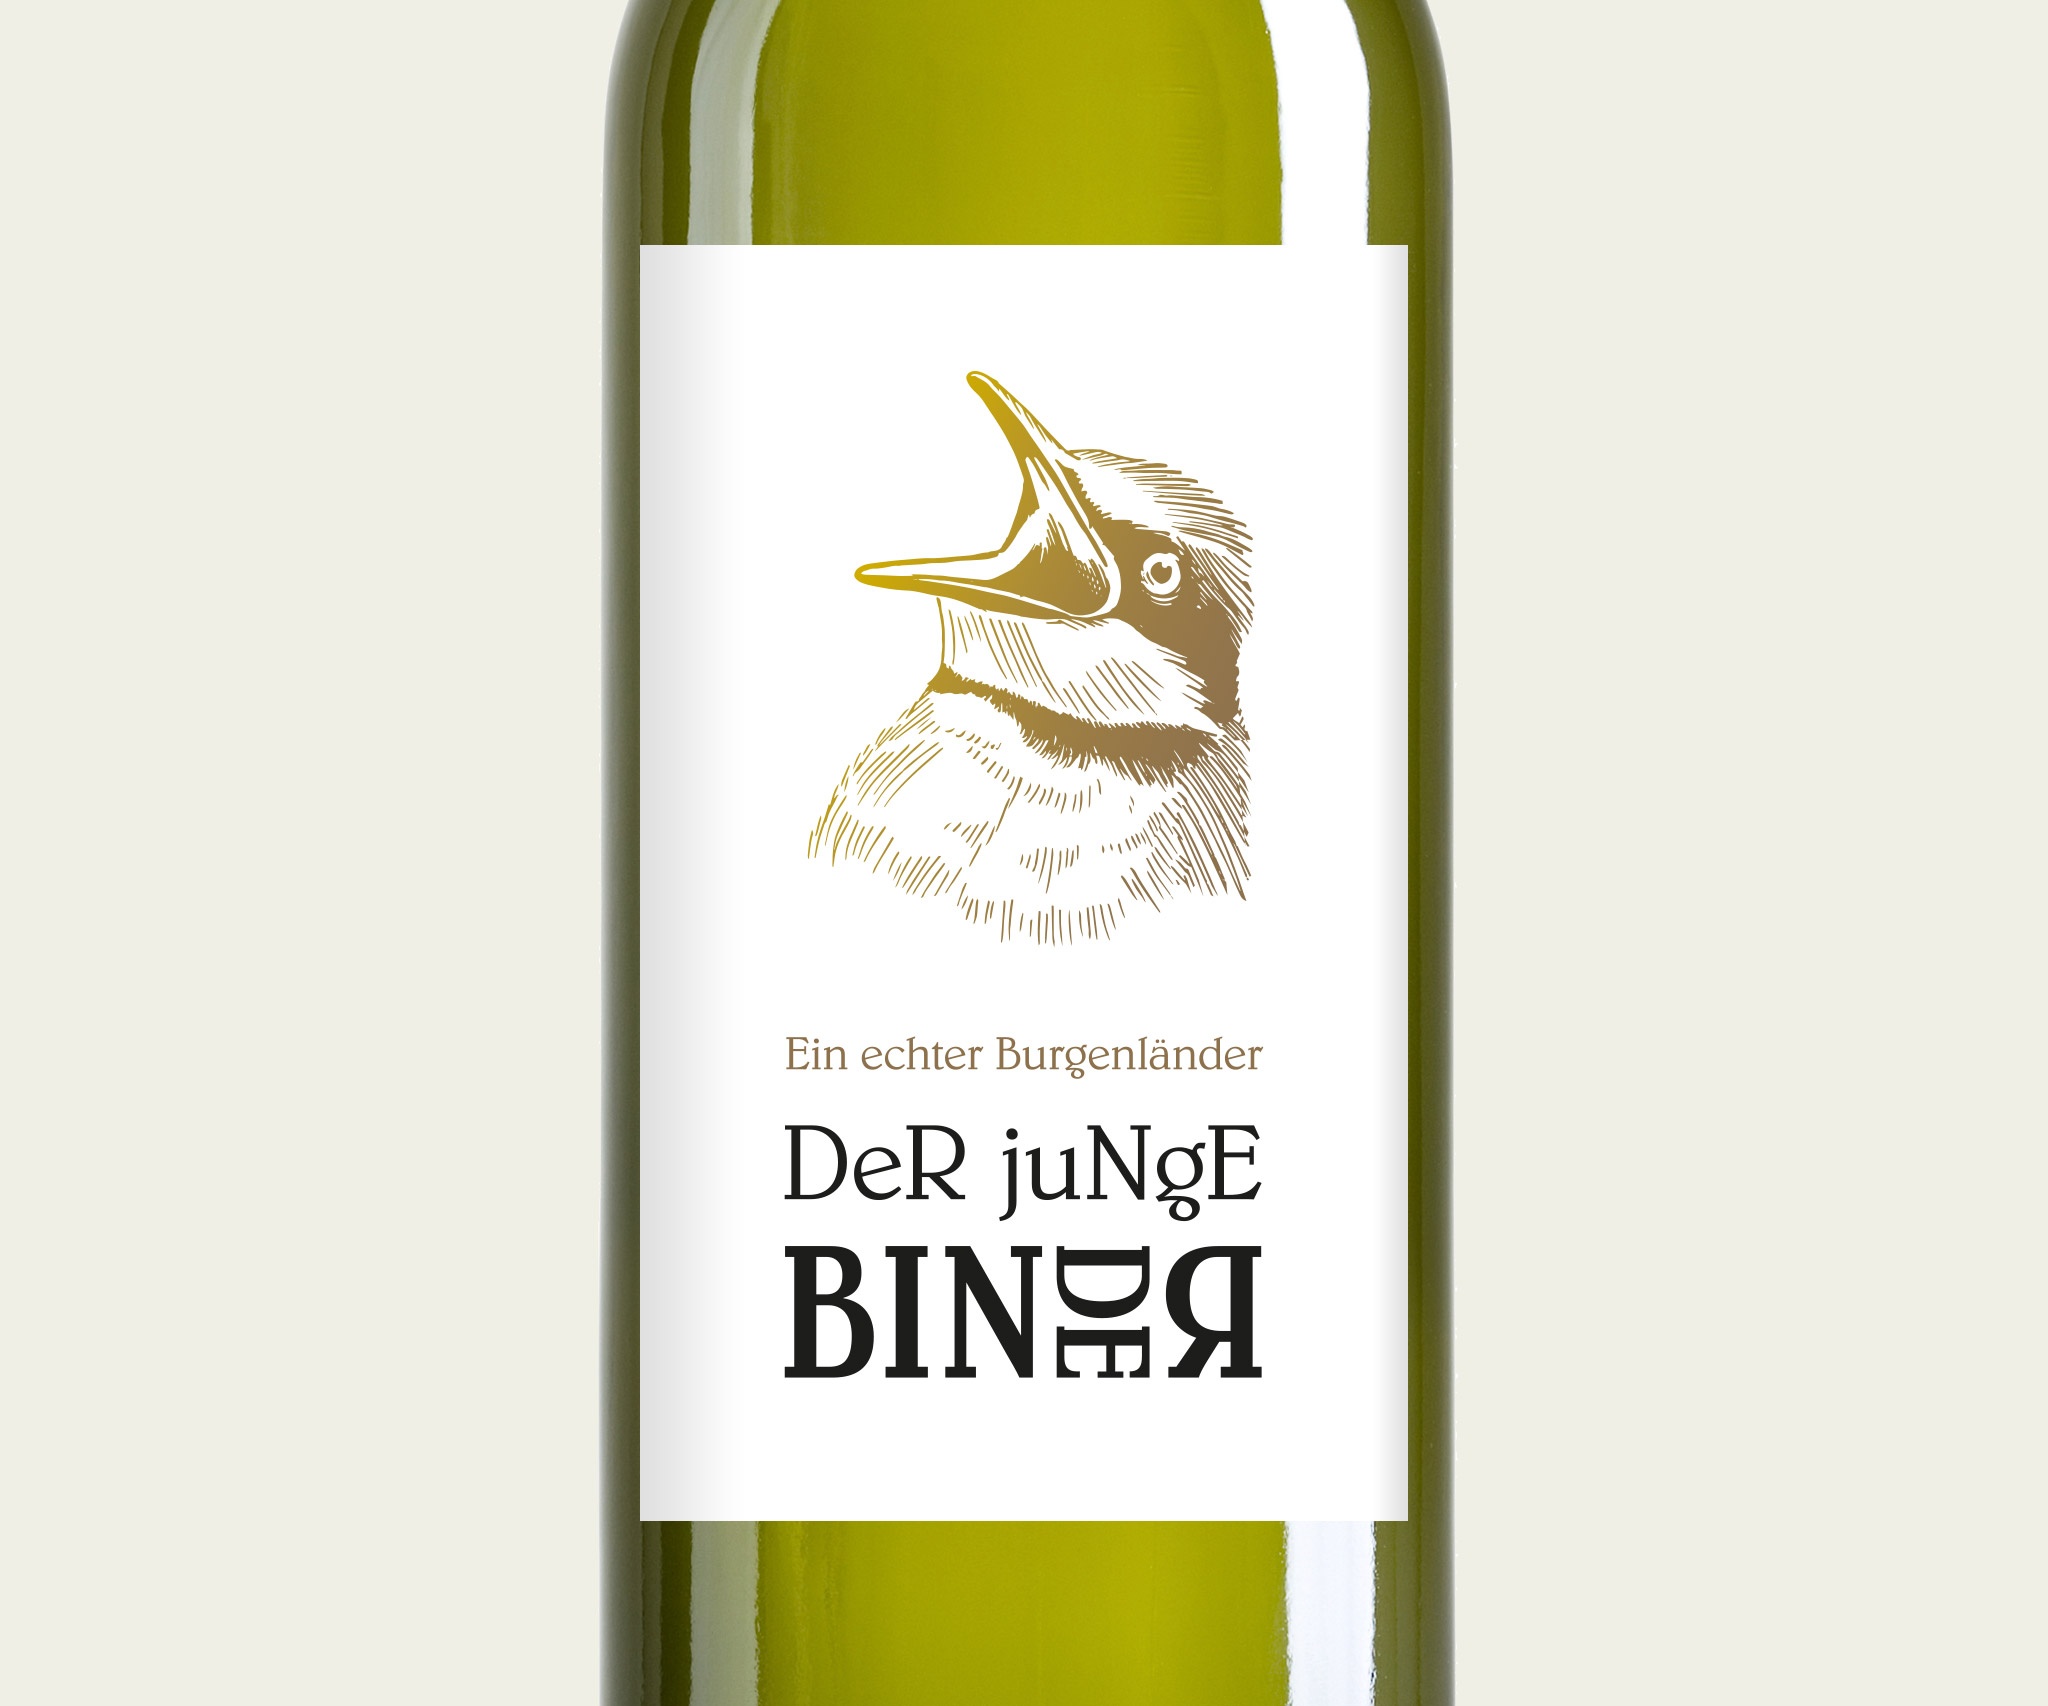 Der junge Binder – Wine label on bottle of winery Binder in Mörbisch am See